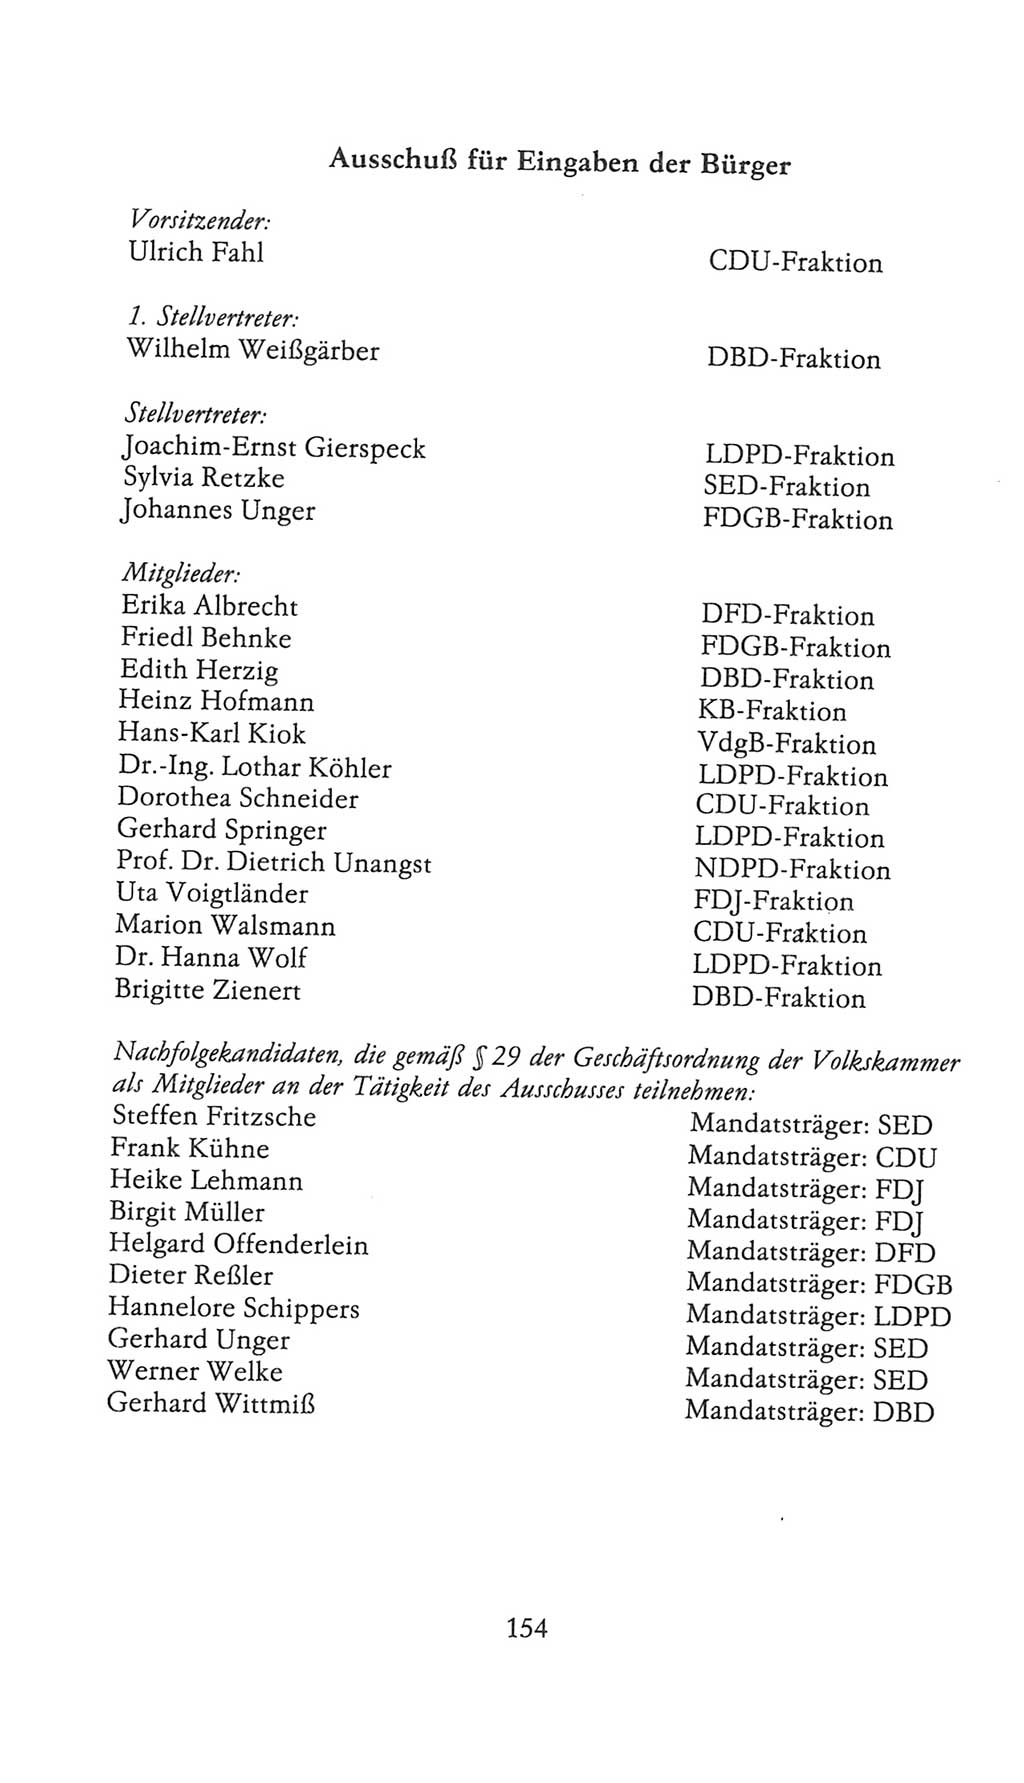 Volkskammer (VK) der Deutschen Demokratischen Republik (DDR), 9. Wahlperiode 1986-1990, Seite 154 (VK. DDR 9. WP. 1986-1990, S. 154)